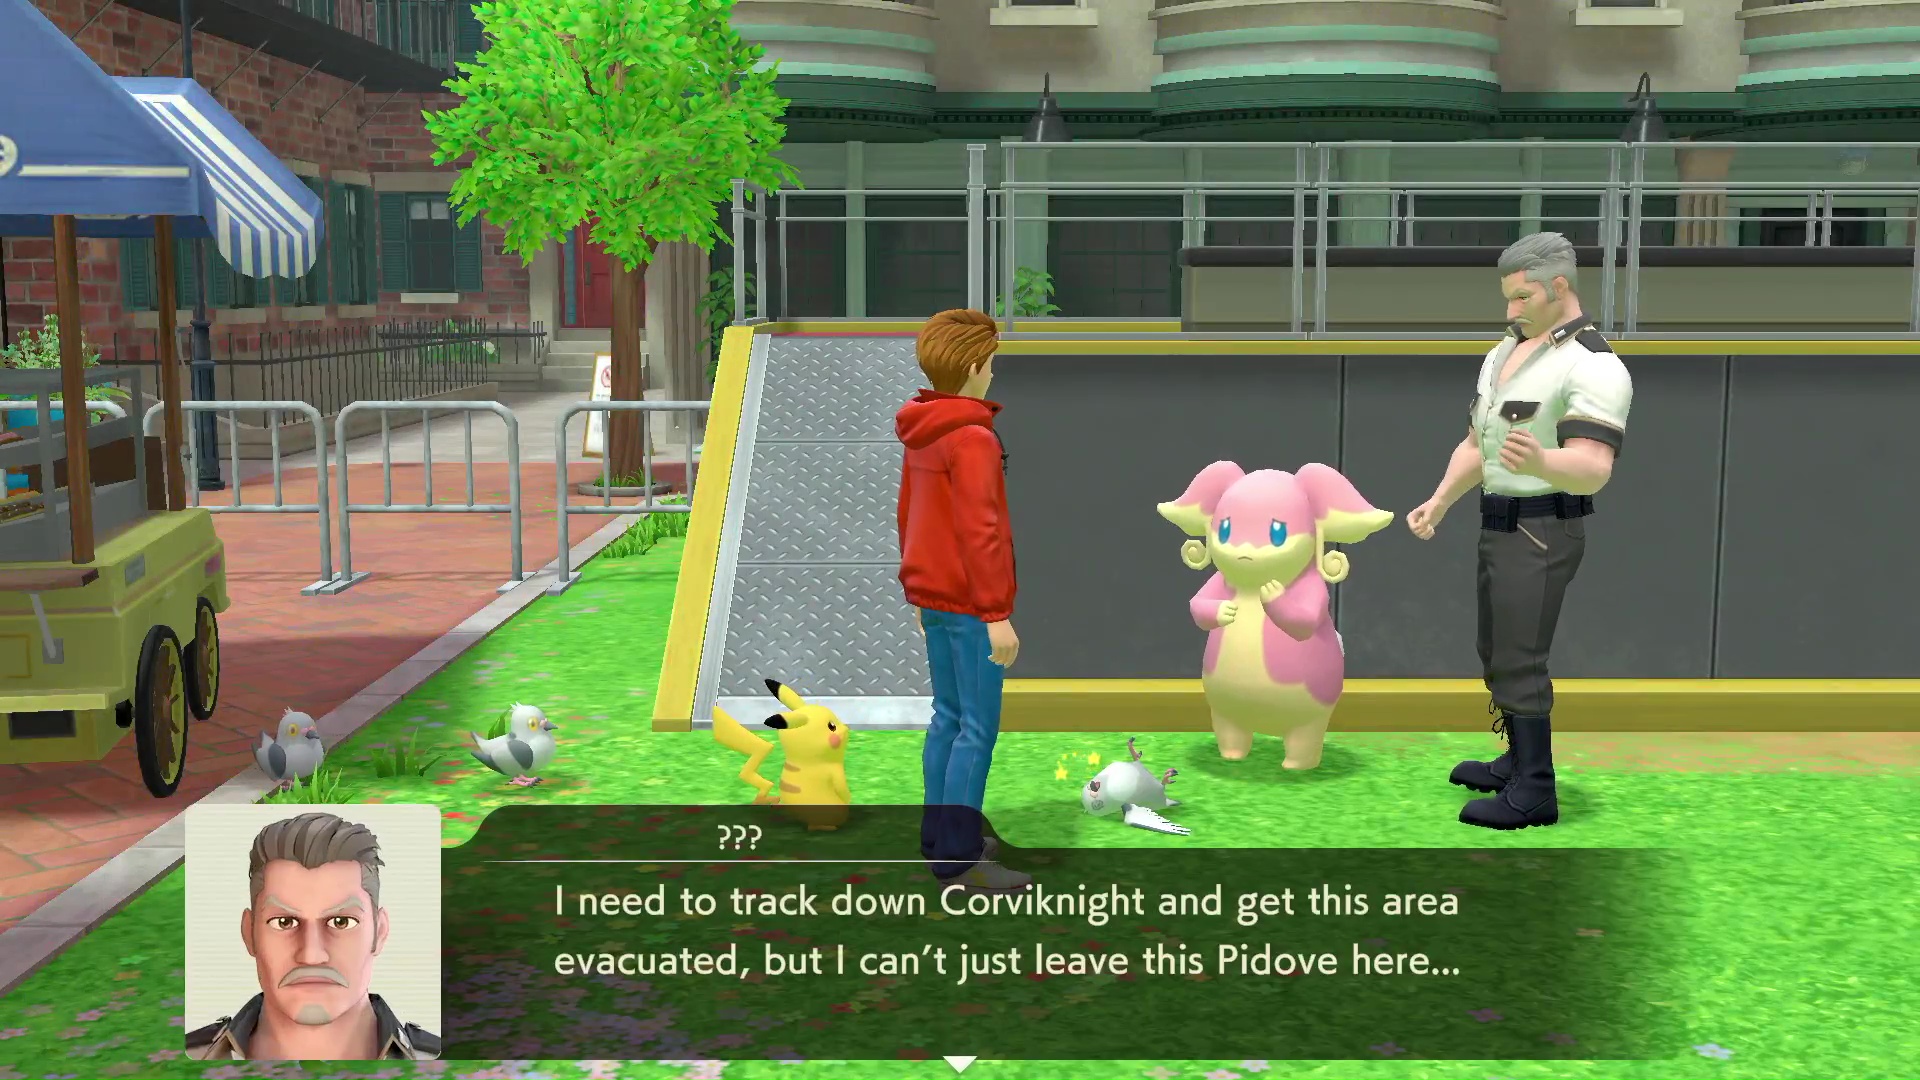 Capture d'écran du détective Pikachu Returns avec Tim Goodman trouvant des objets et parlant à Pokémon pour résoudre le dernier mystère.